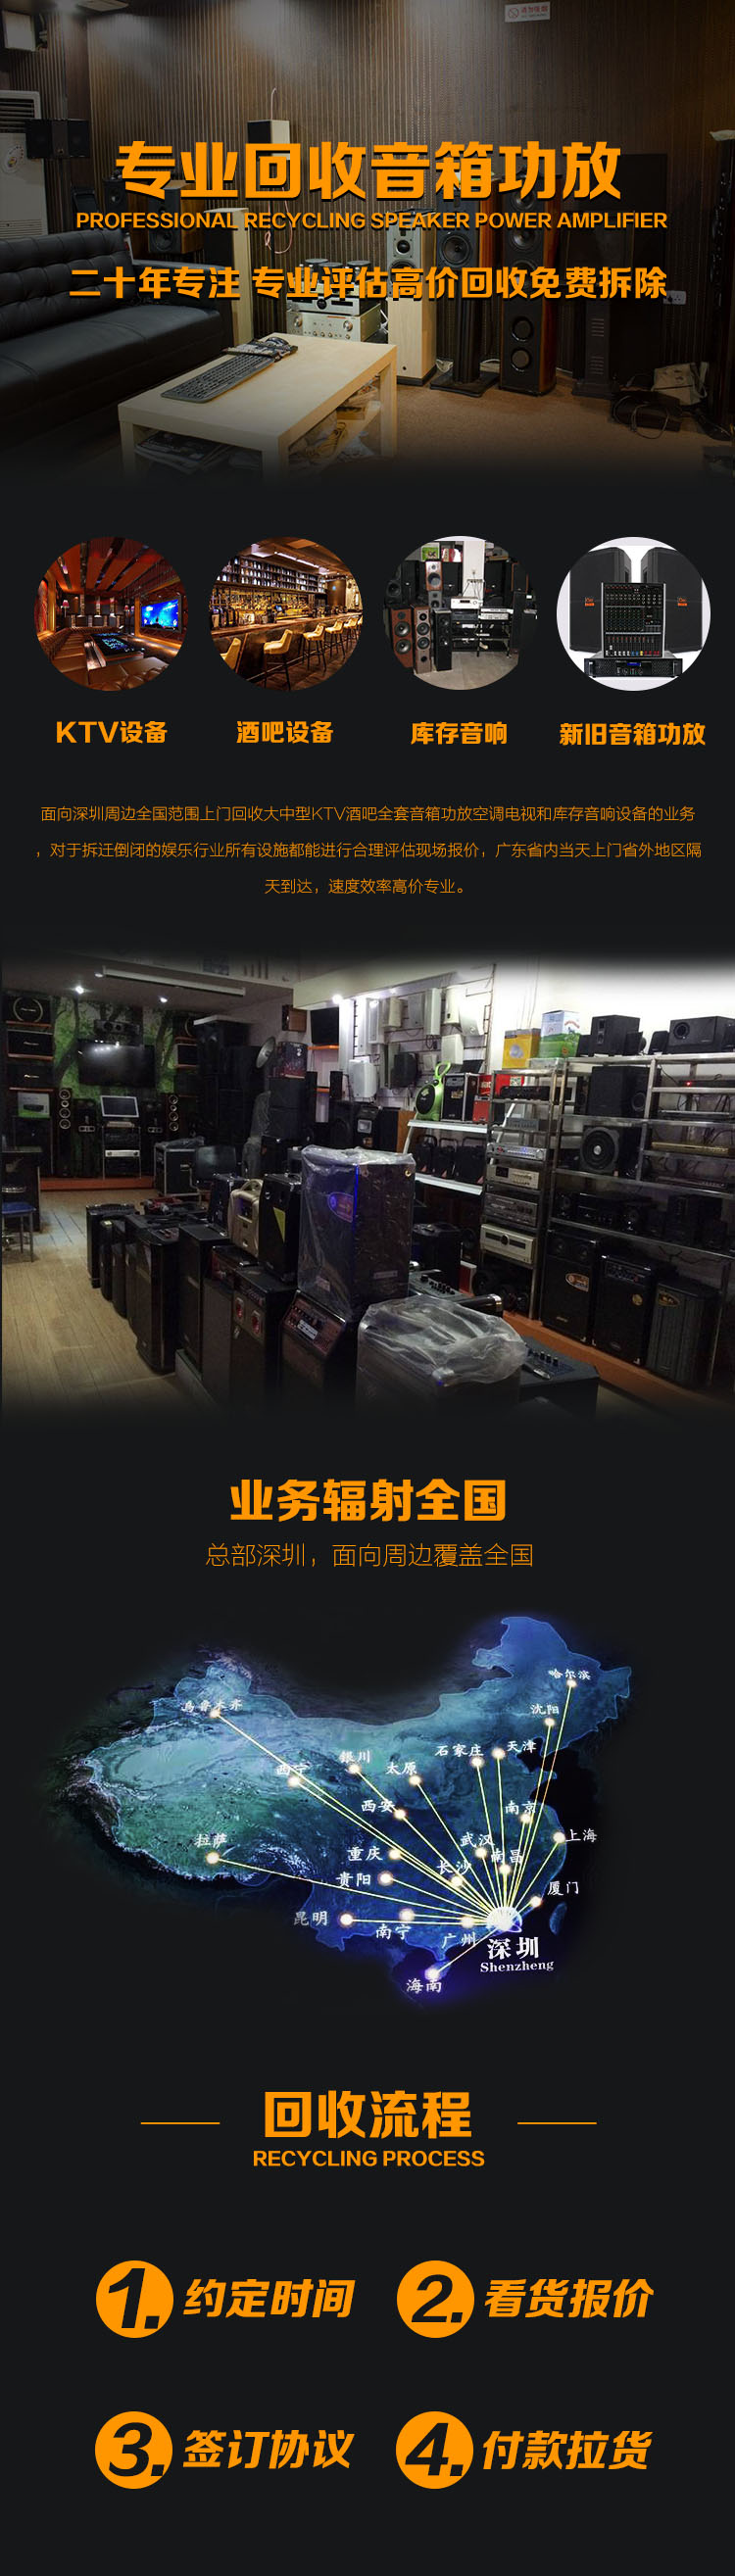 深圳KTV回收 KTV音响设备回收中心